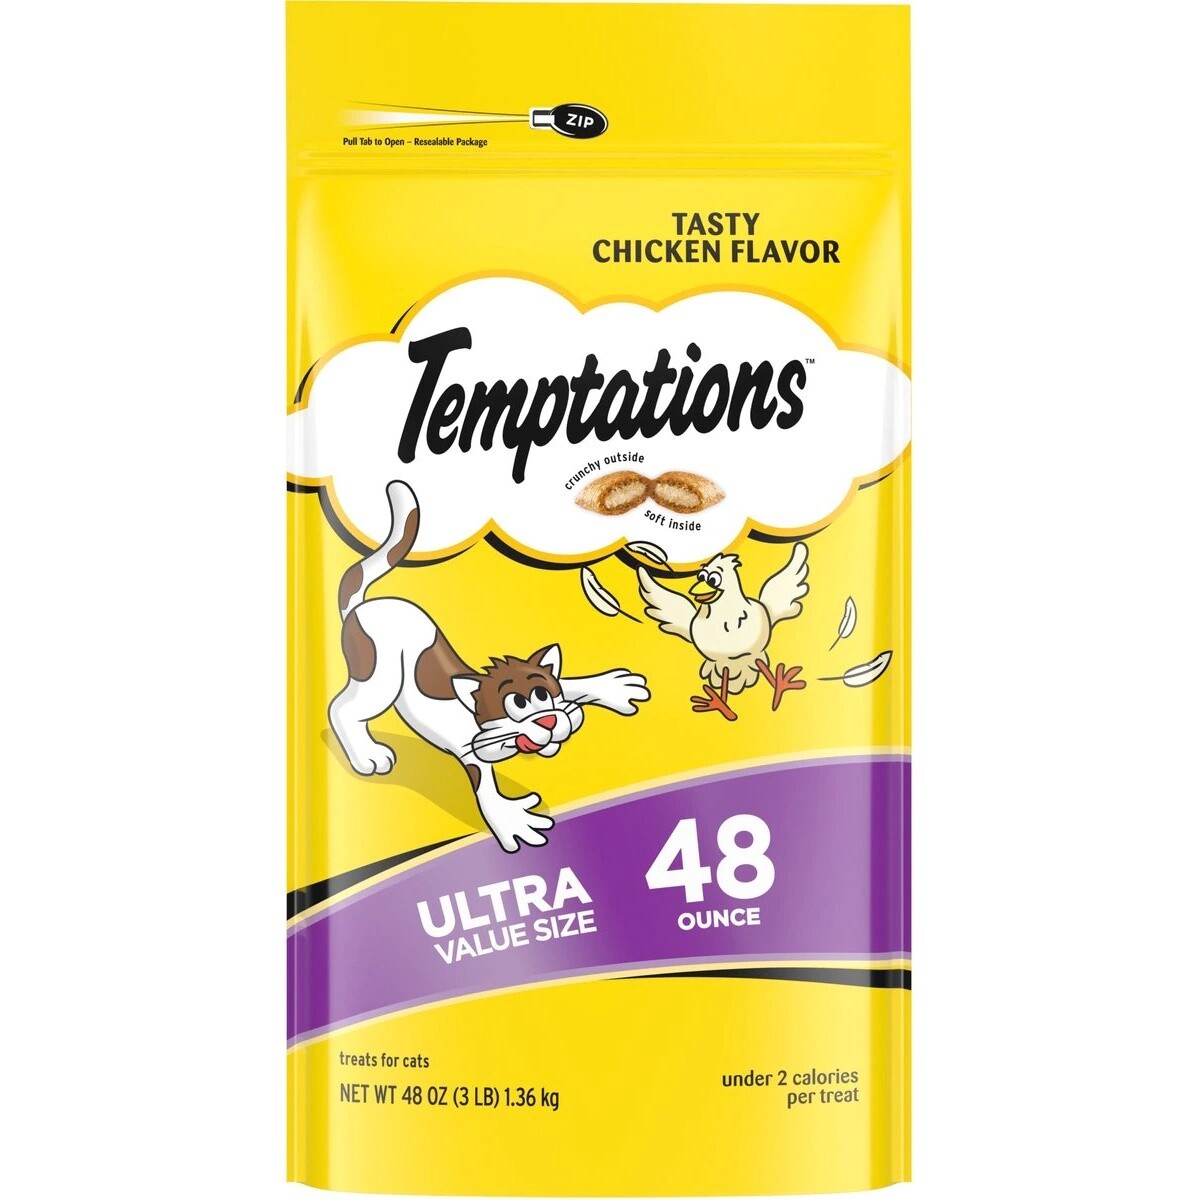 Temptations Tasty Chicken Flavor 48 oz